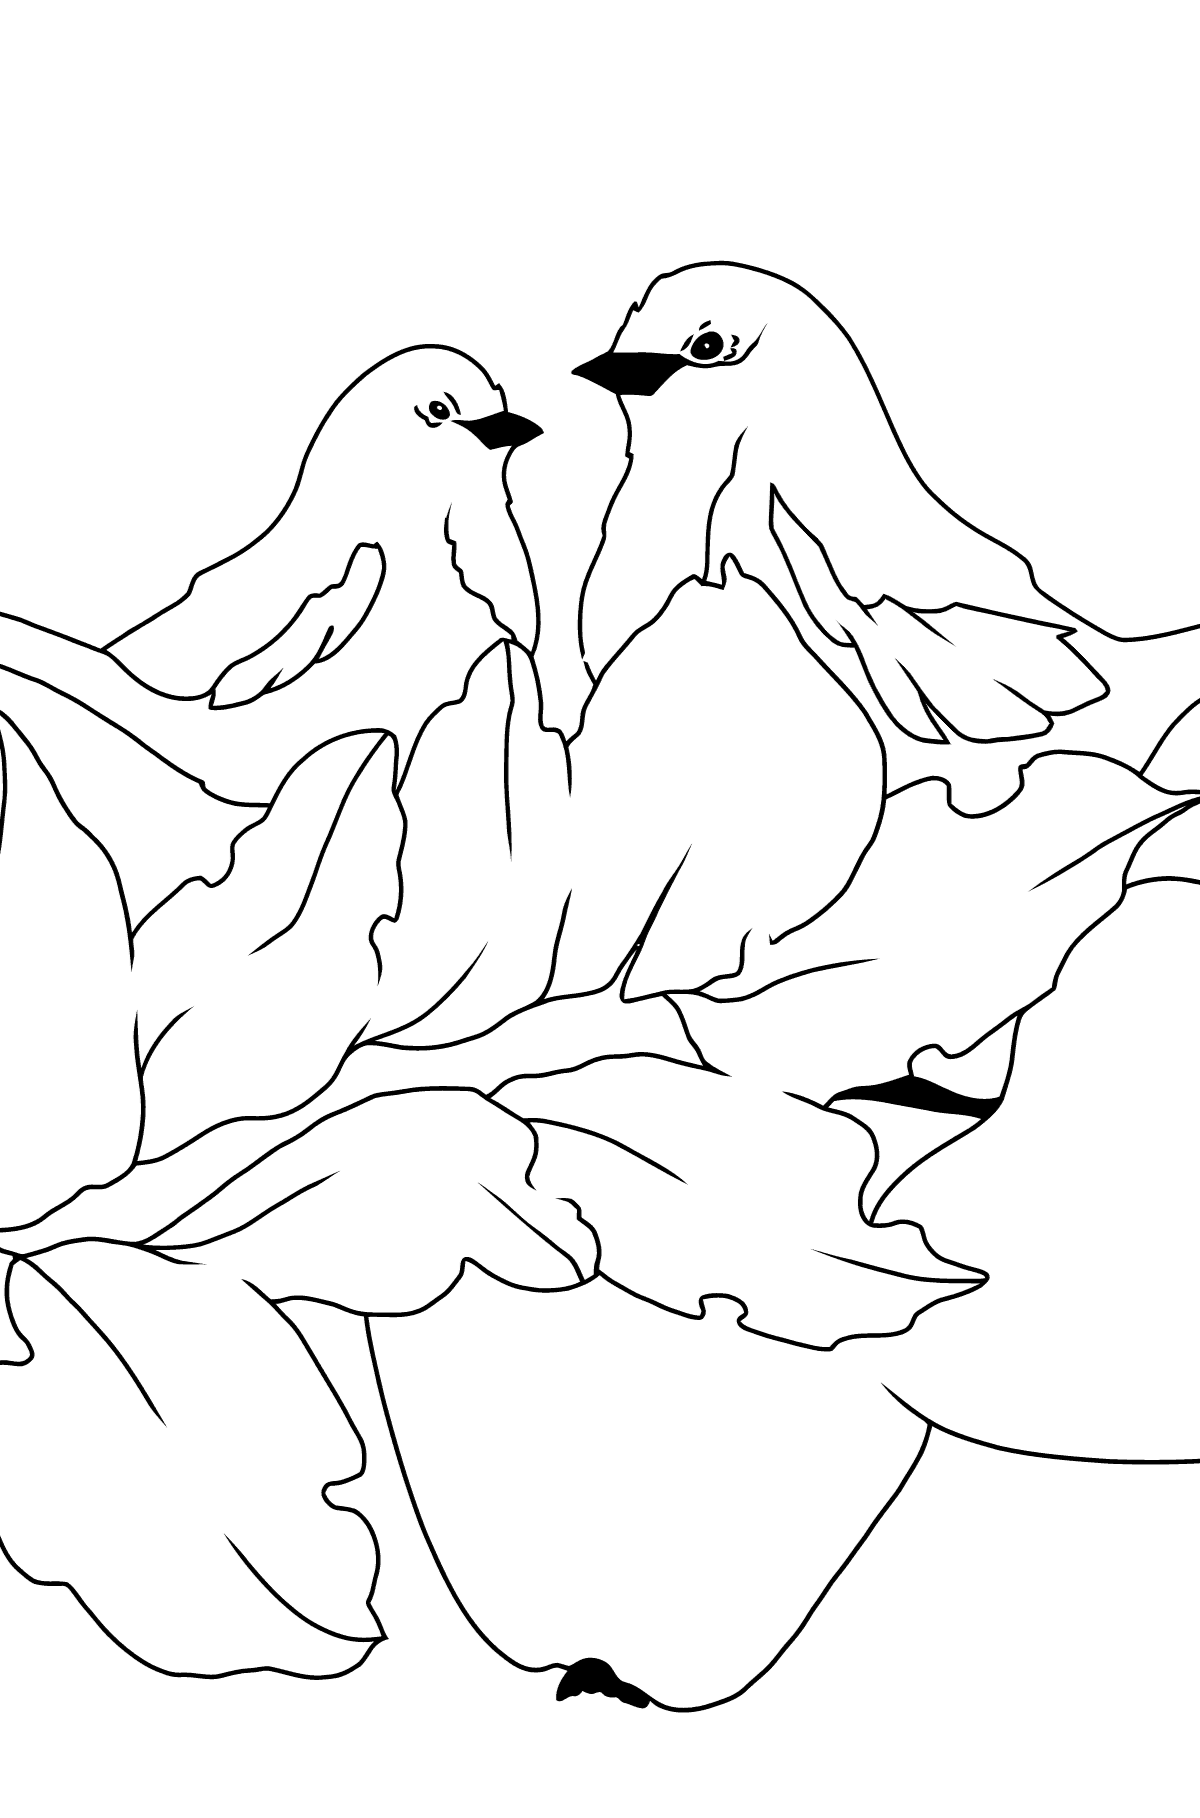 Осенняя картинка раскраска Птицы - Картинки для Детей